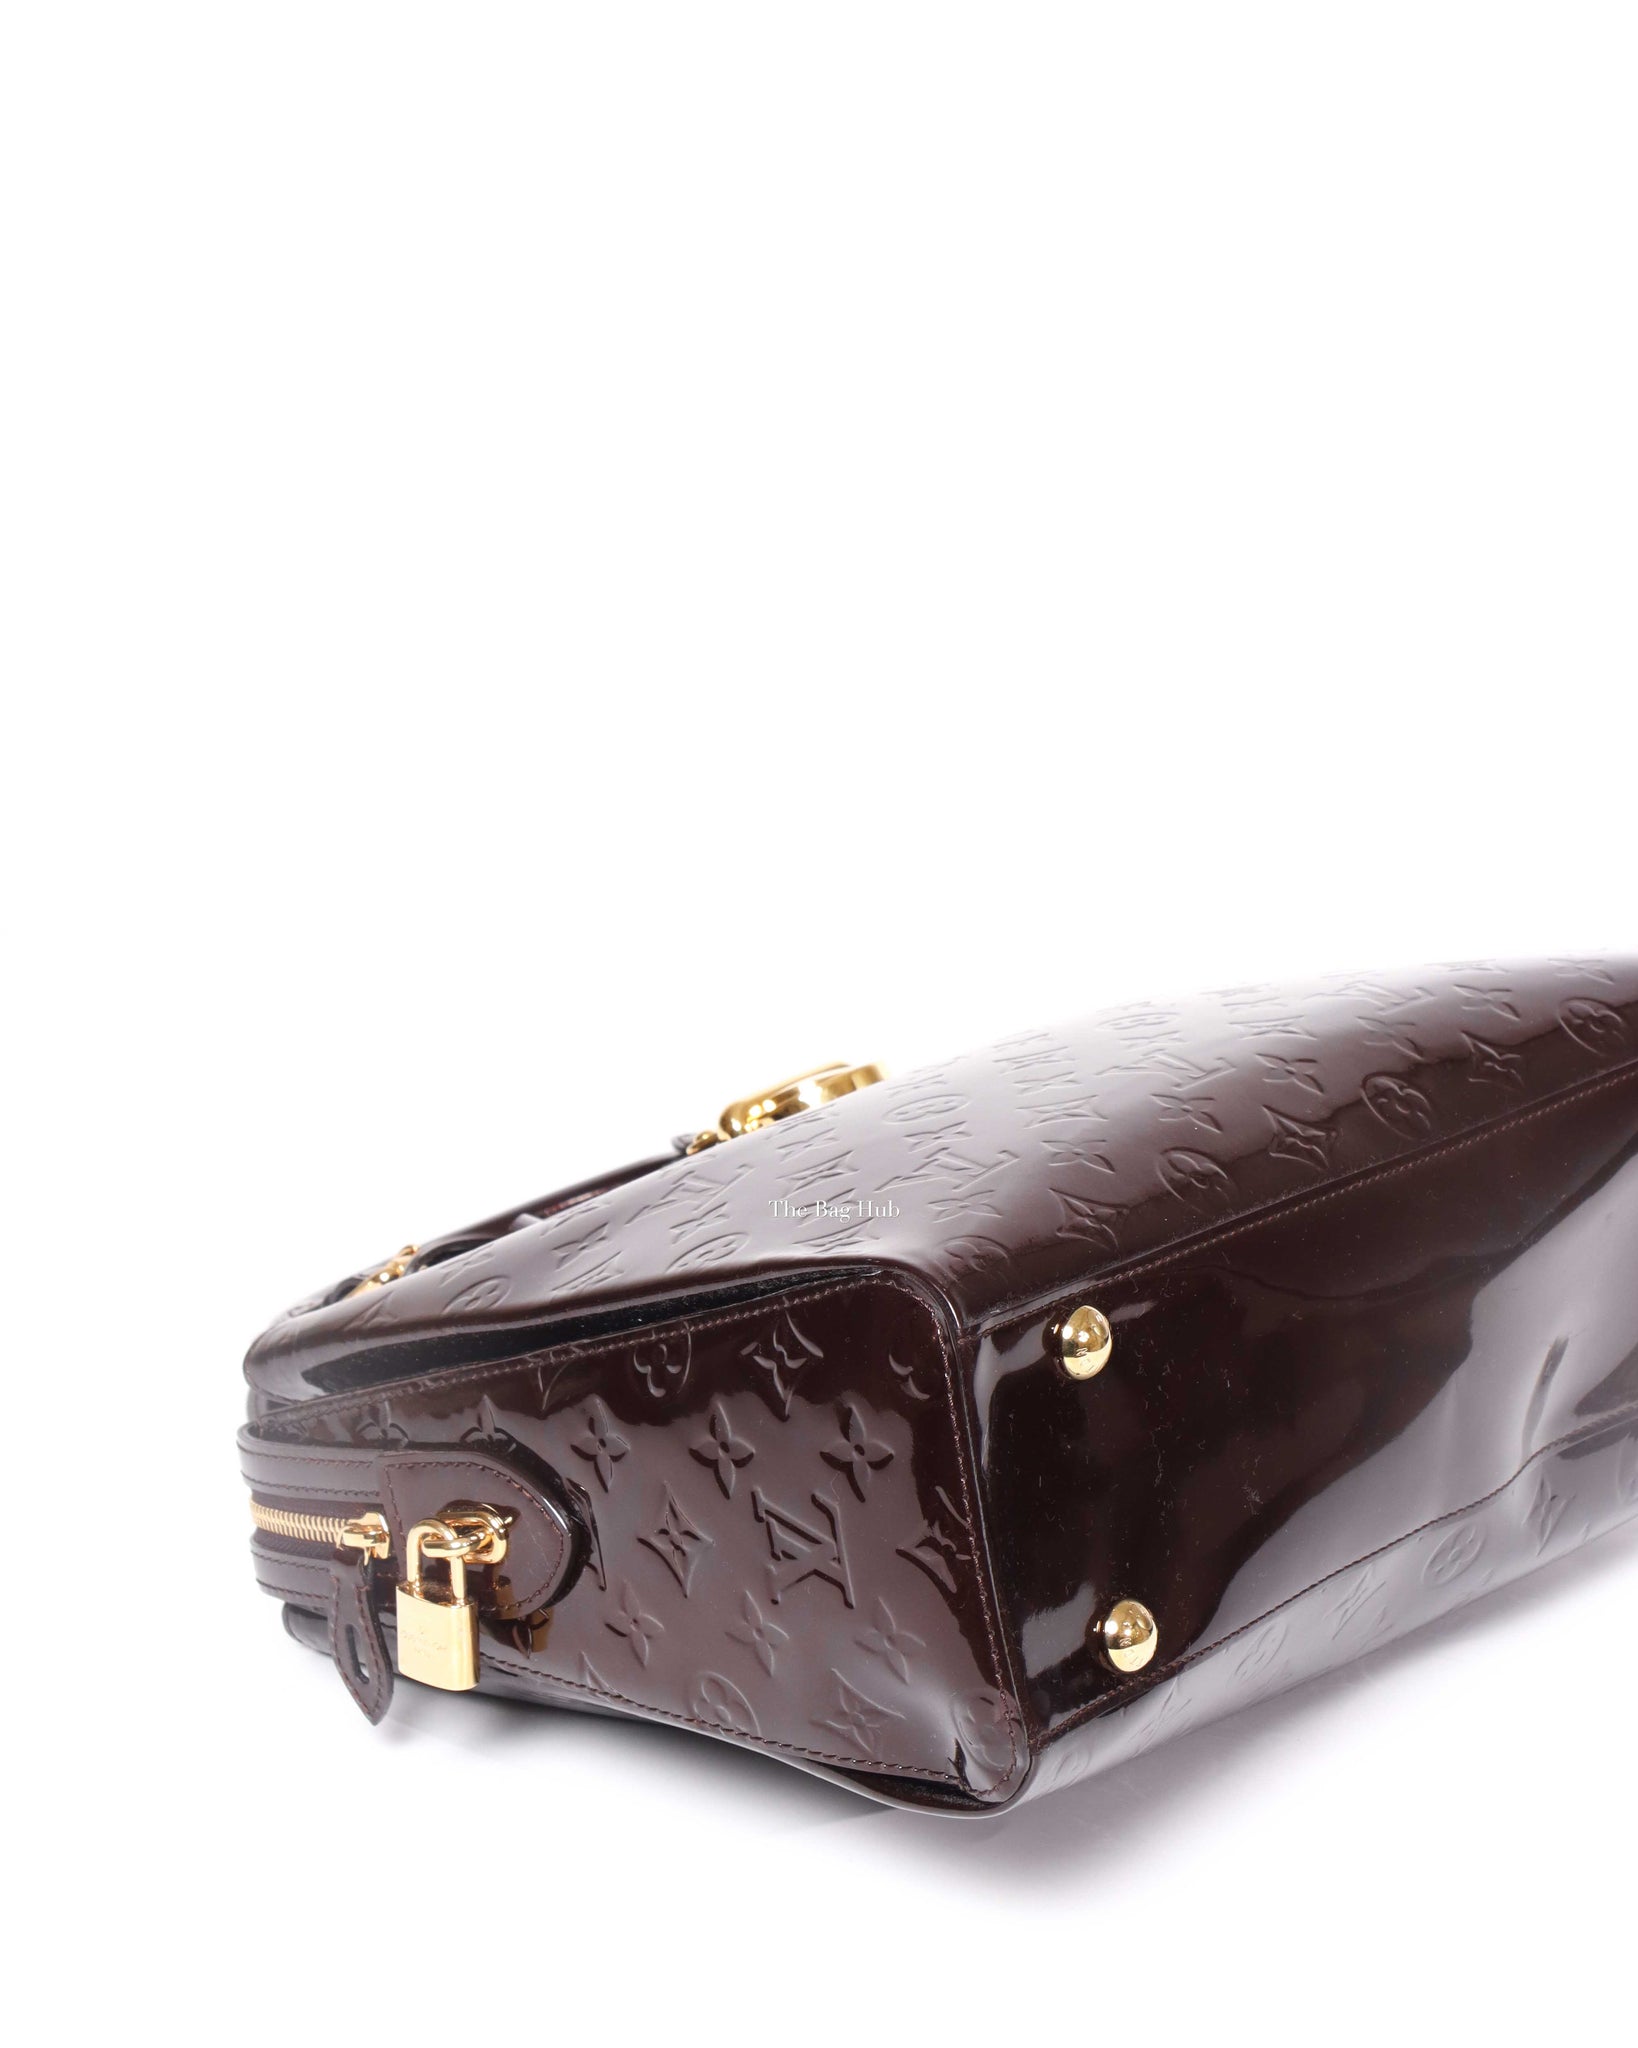 Louis Vuitton Melrose Avenue Handbag 396642